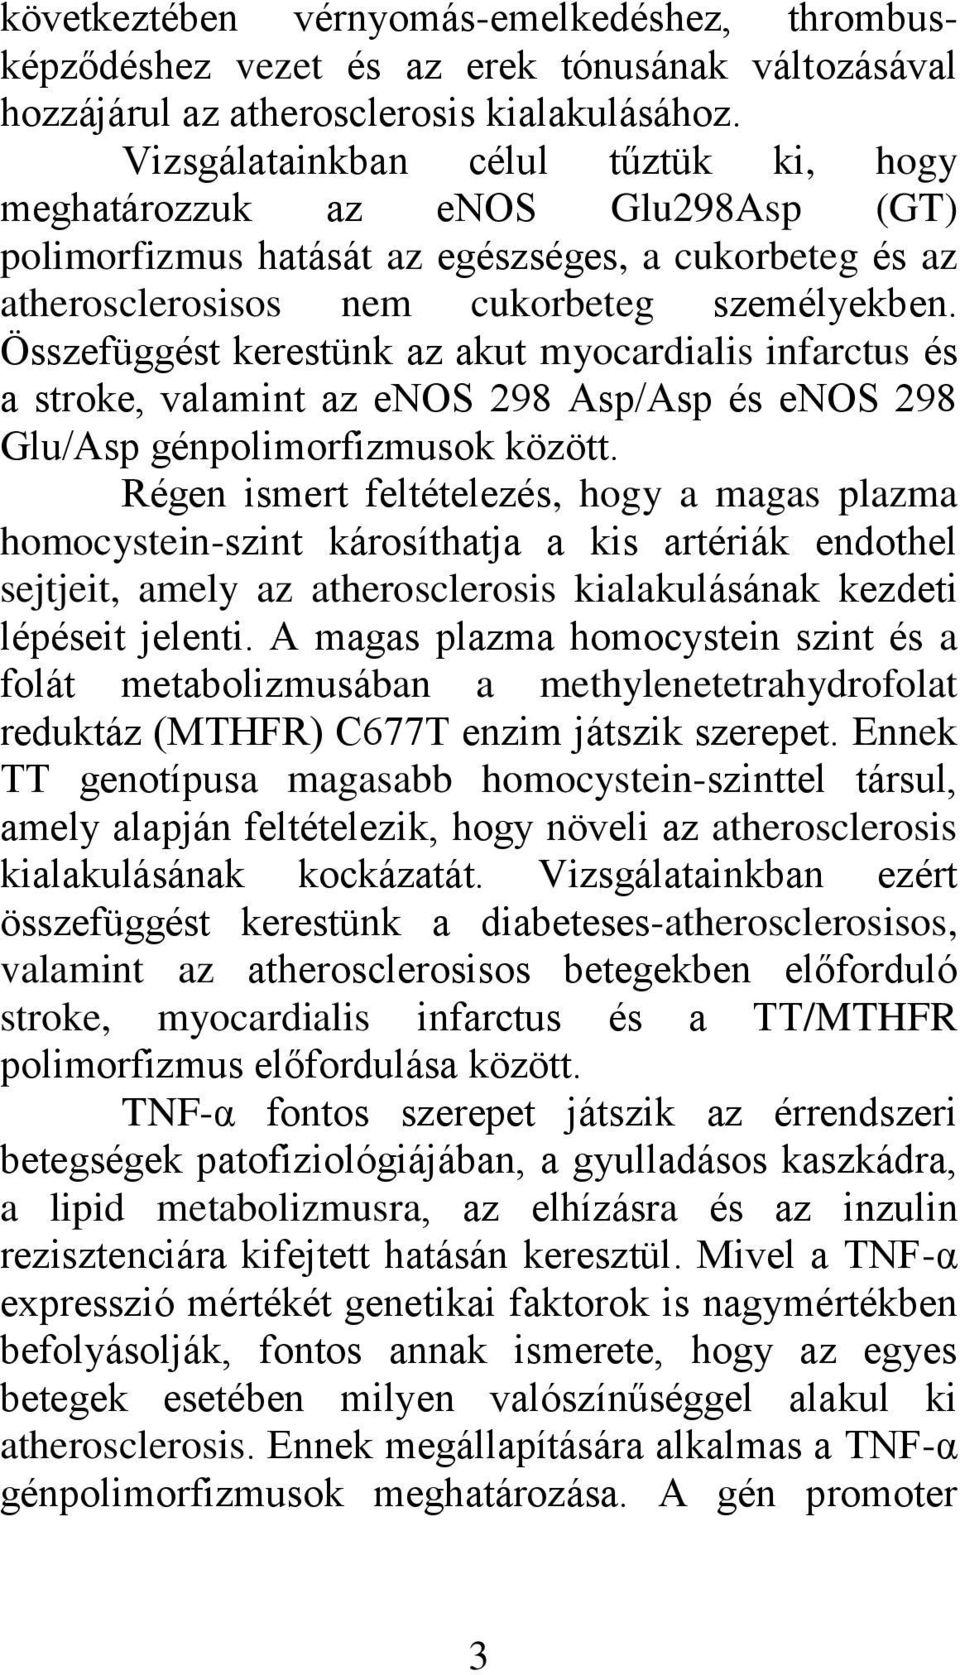 Összefüggést kerestünk az akut myocardialis infarctus és a stroke, valamint az enos 298 Asp/Asp és enos 298 Glu/Asp génpolimorfizmusok között.